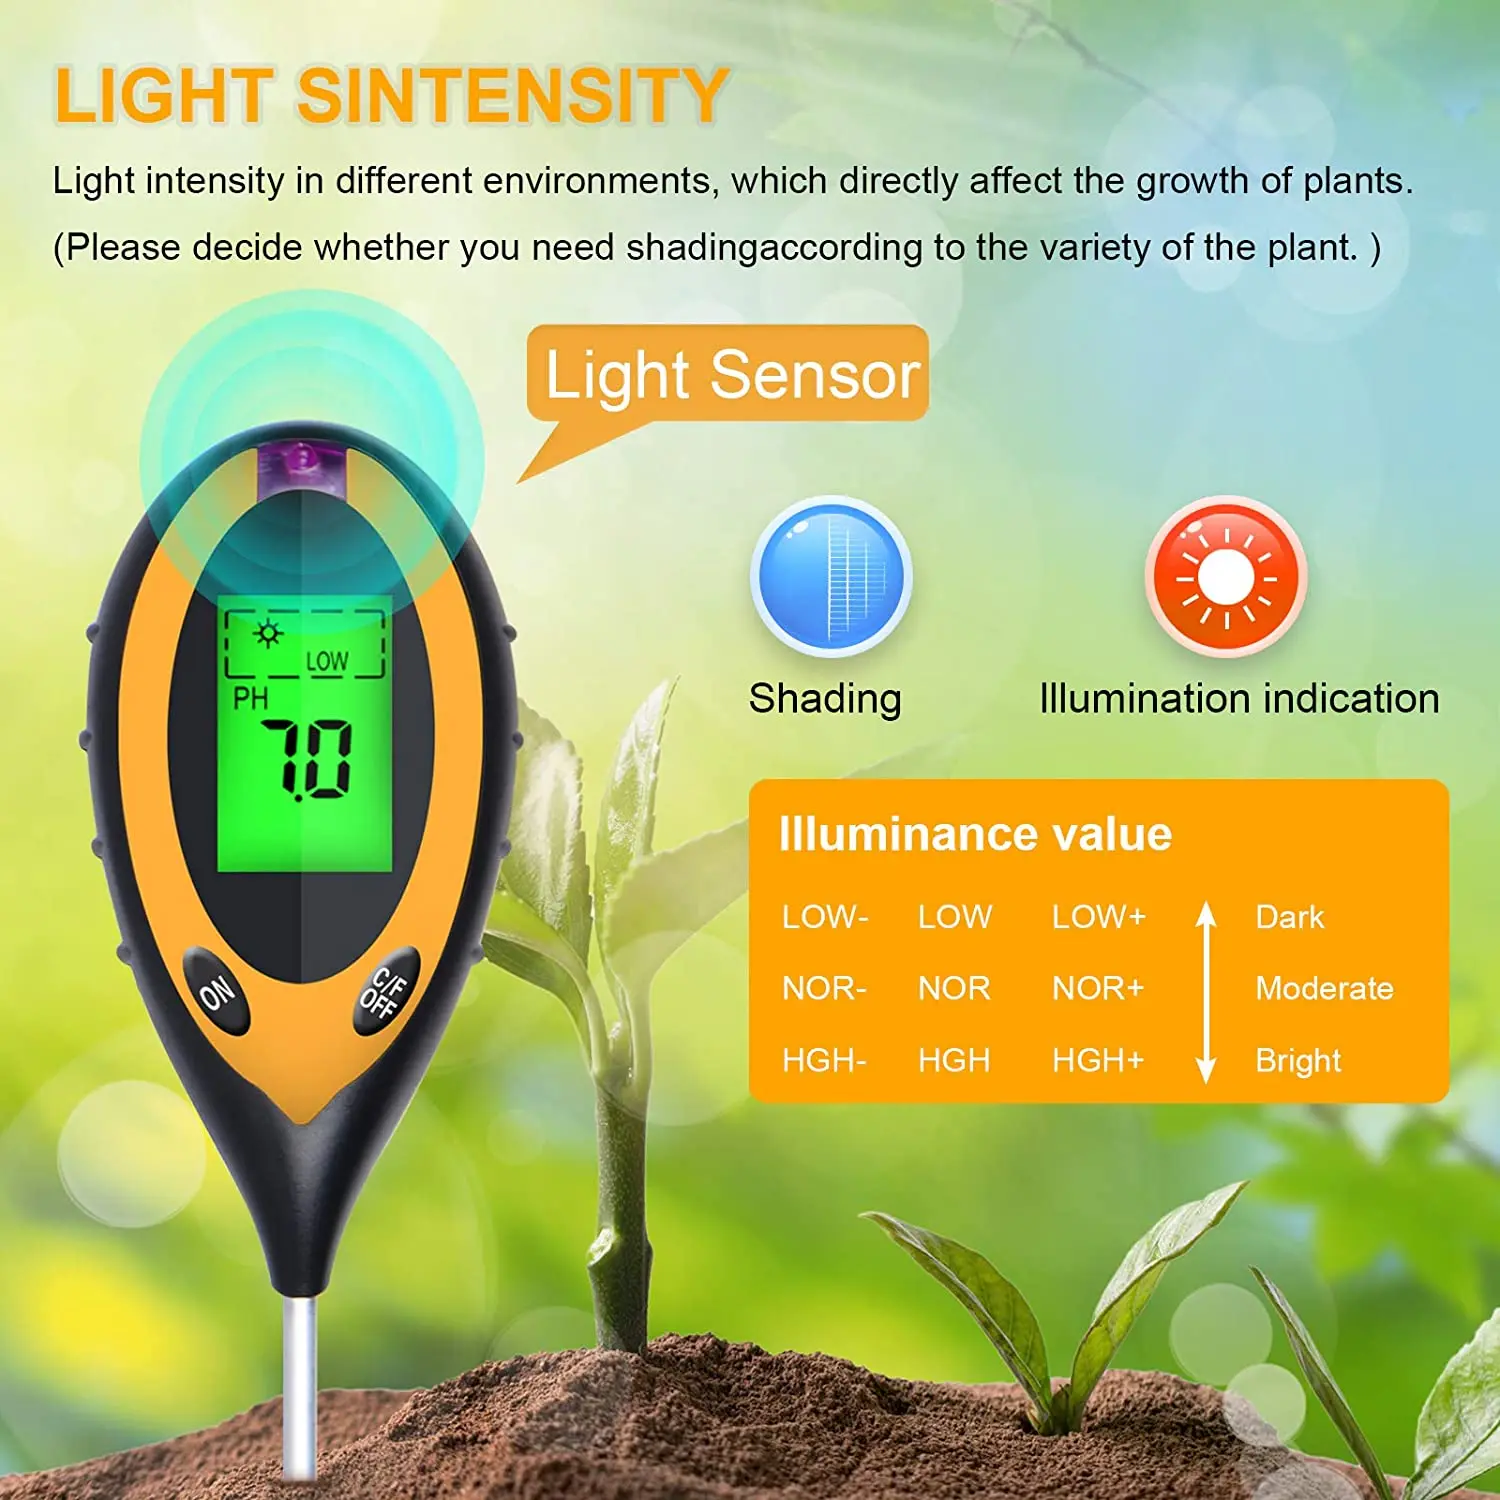 https://ae01.alicdn.com/kf/Hb6dd13f8f08a438c831657e91e2319bfo/Digital-4-in-1-Soil-PH-Meter-Moisture-Monitor-Temperature-Sunlight-Tester-for-Home-Garden-Farm.jpg